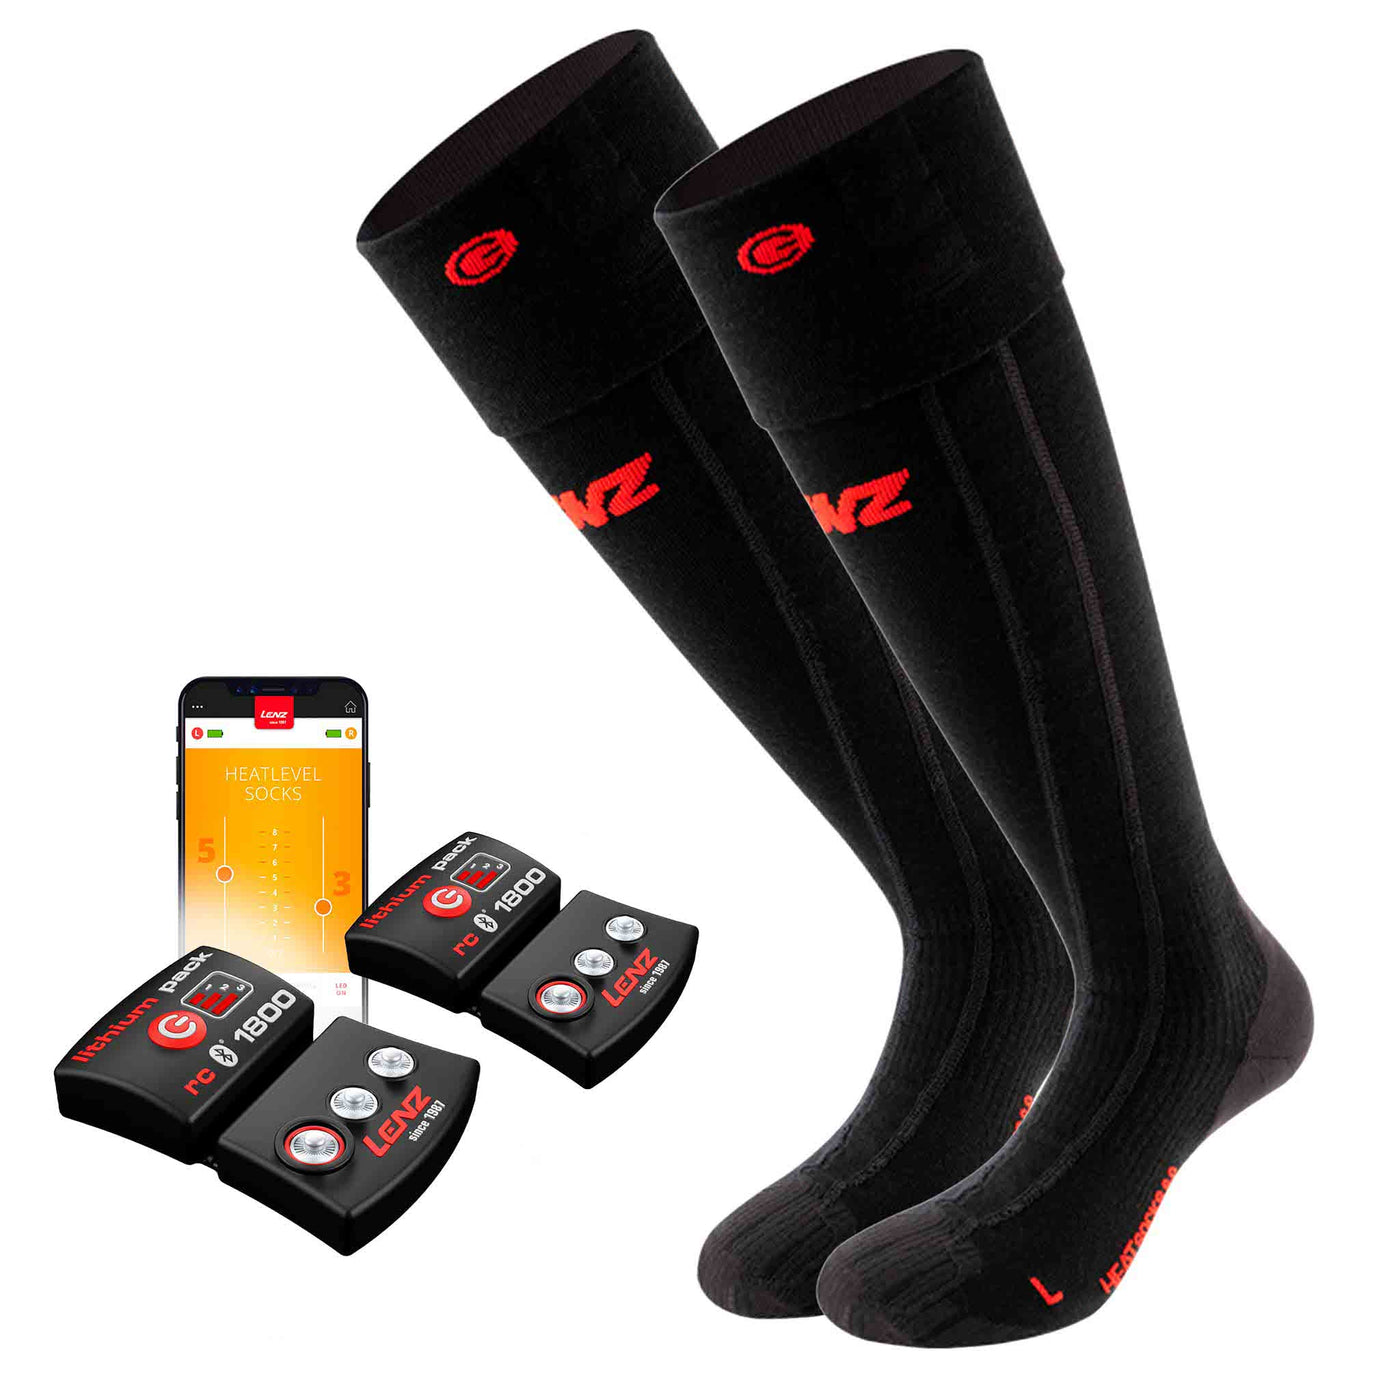 Lenz Heat Sock 6.1 Toe Cap Merino Kit de compression